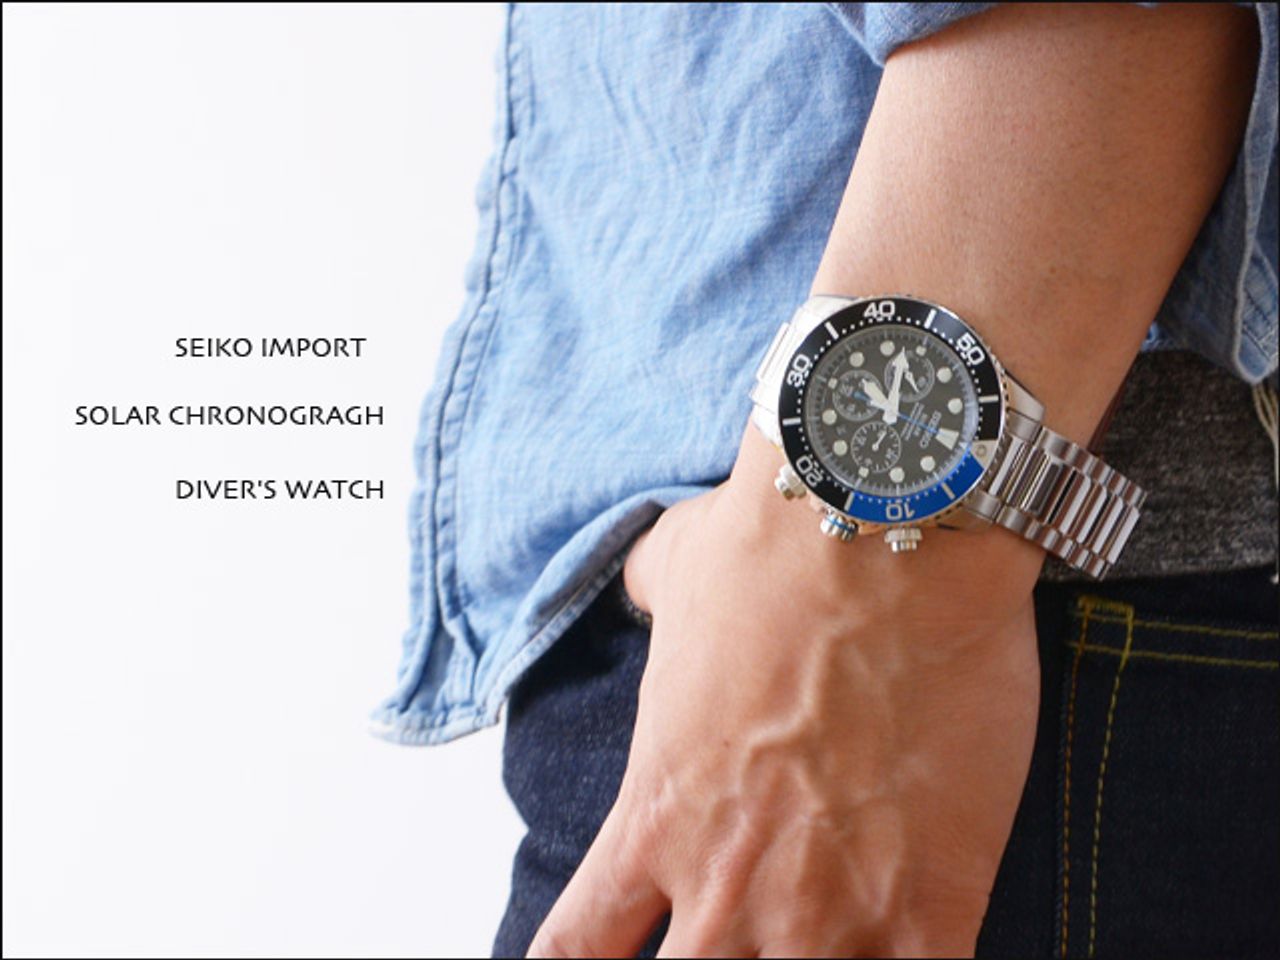 Mặt đồng hồ làm bằng tinh thể Hardlex chống va đập cực tốt, có đường kính 43mm phù hợp với người có khổ tay to